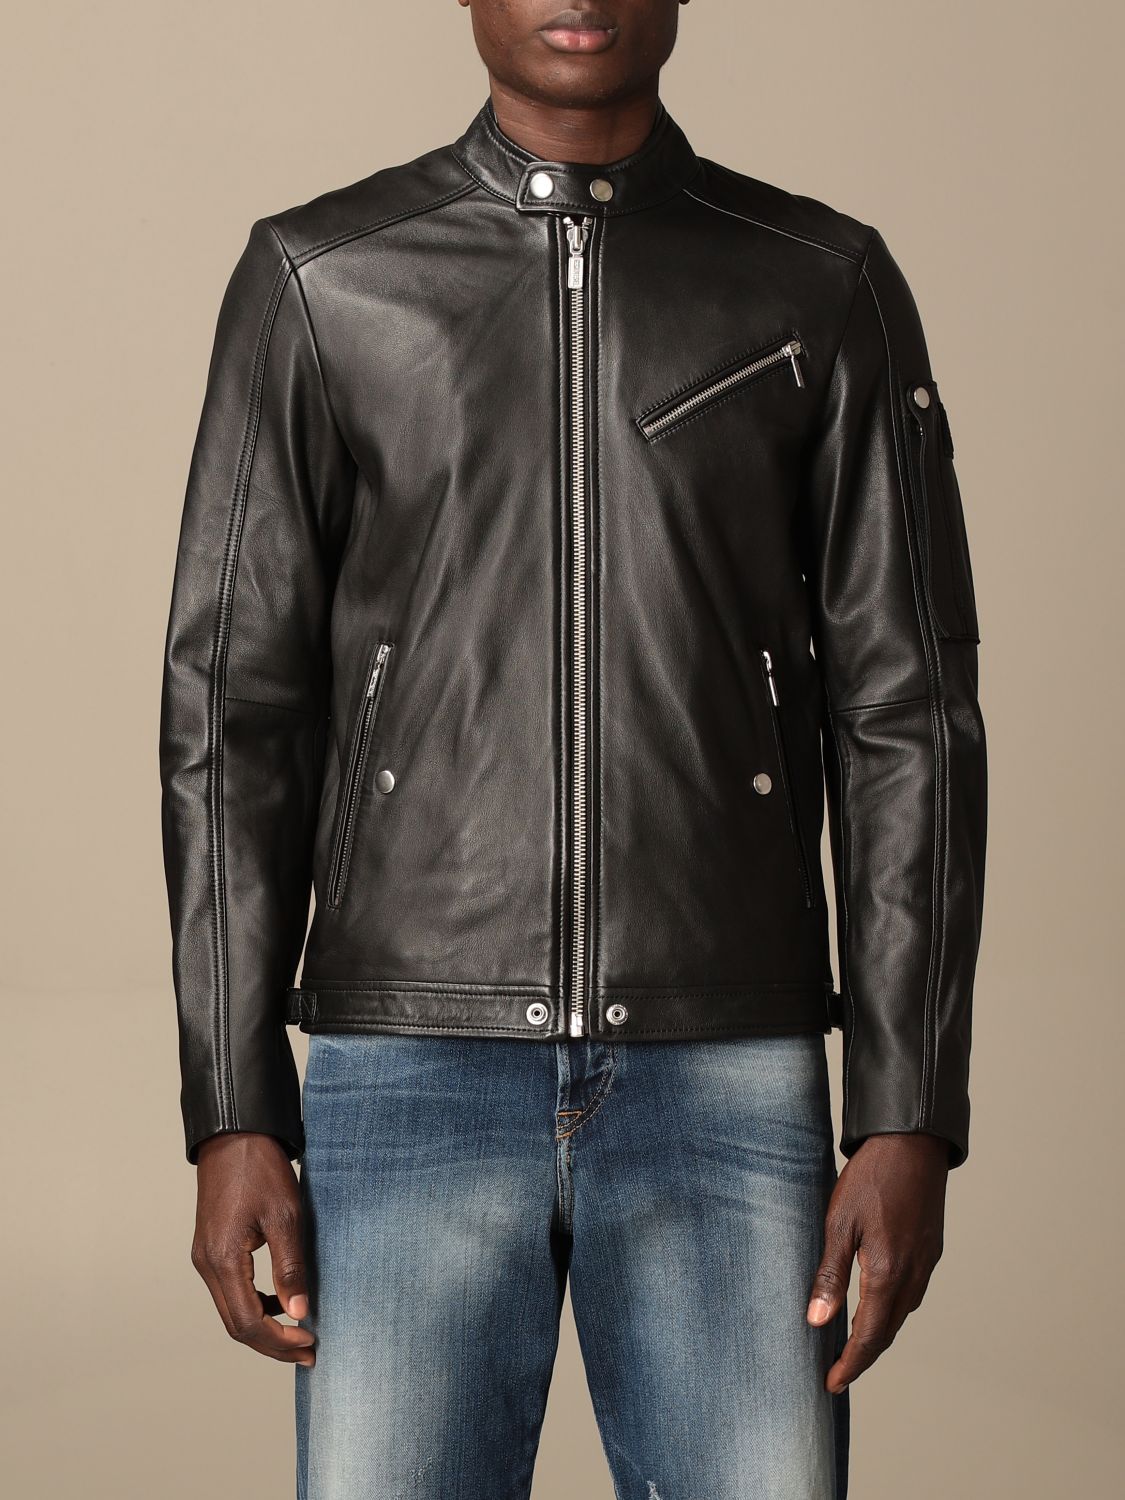 DIESEL: leather jacket with zip - Black | Diesel jacket A00270